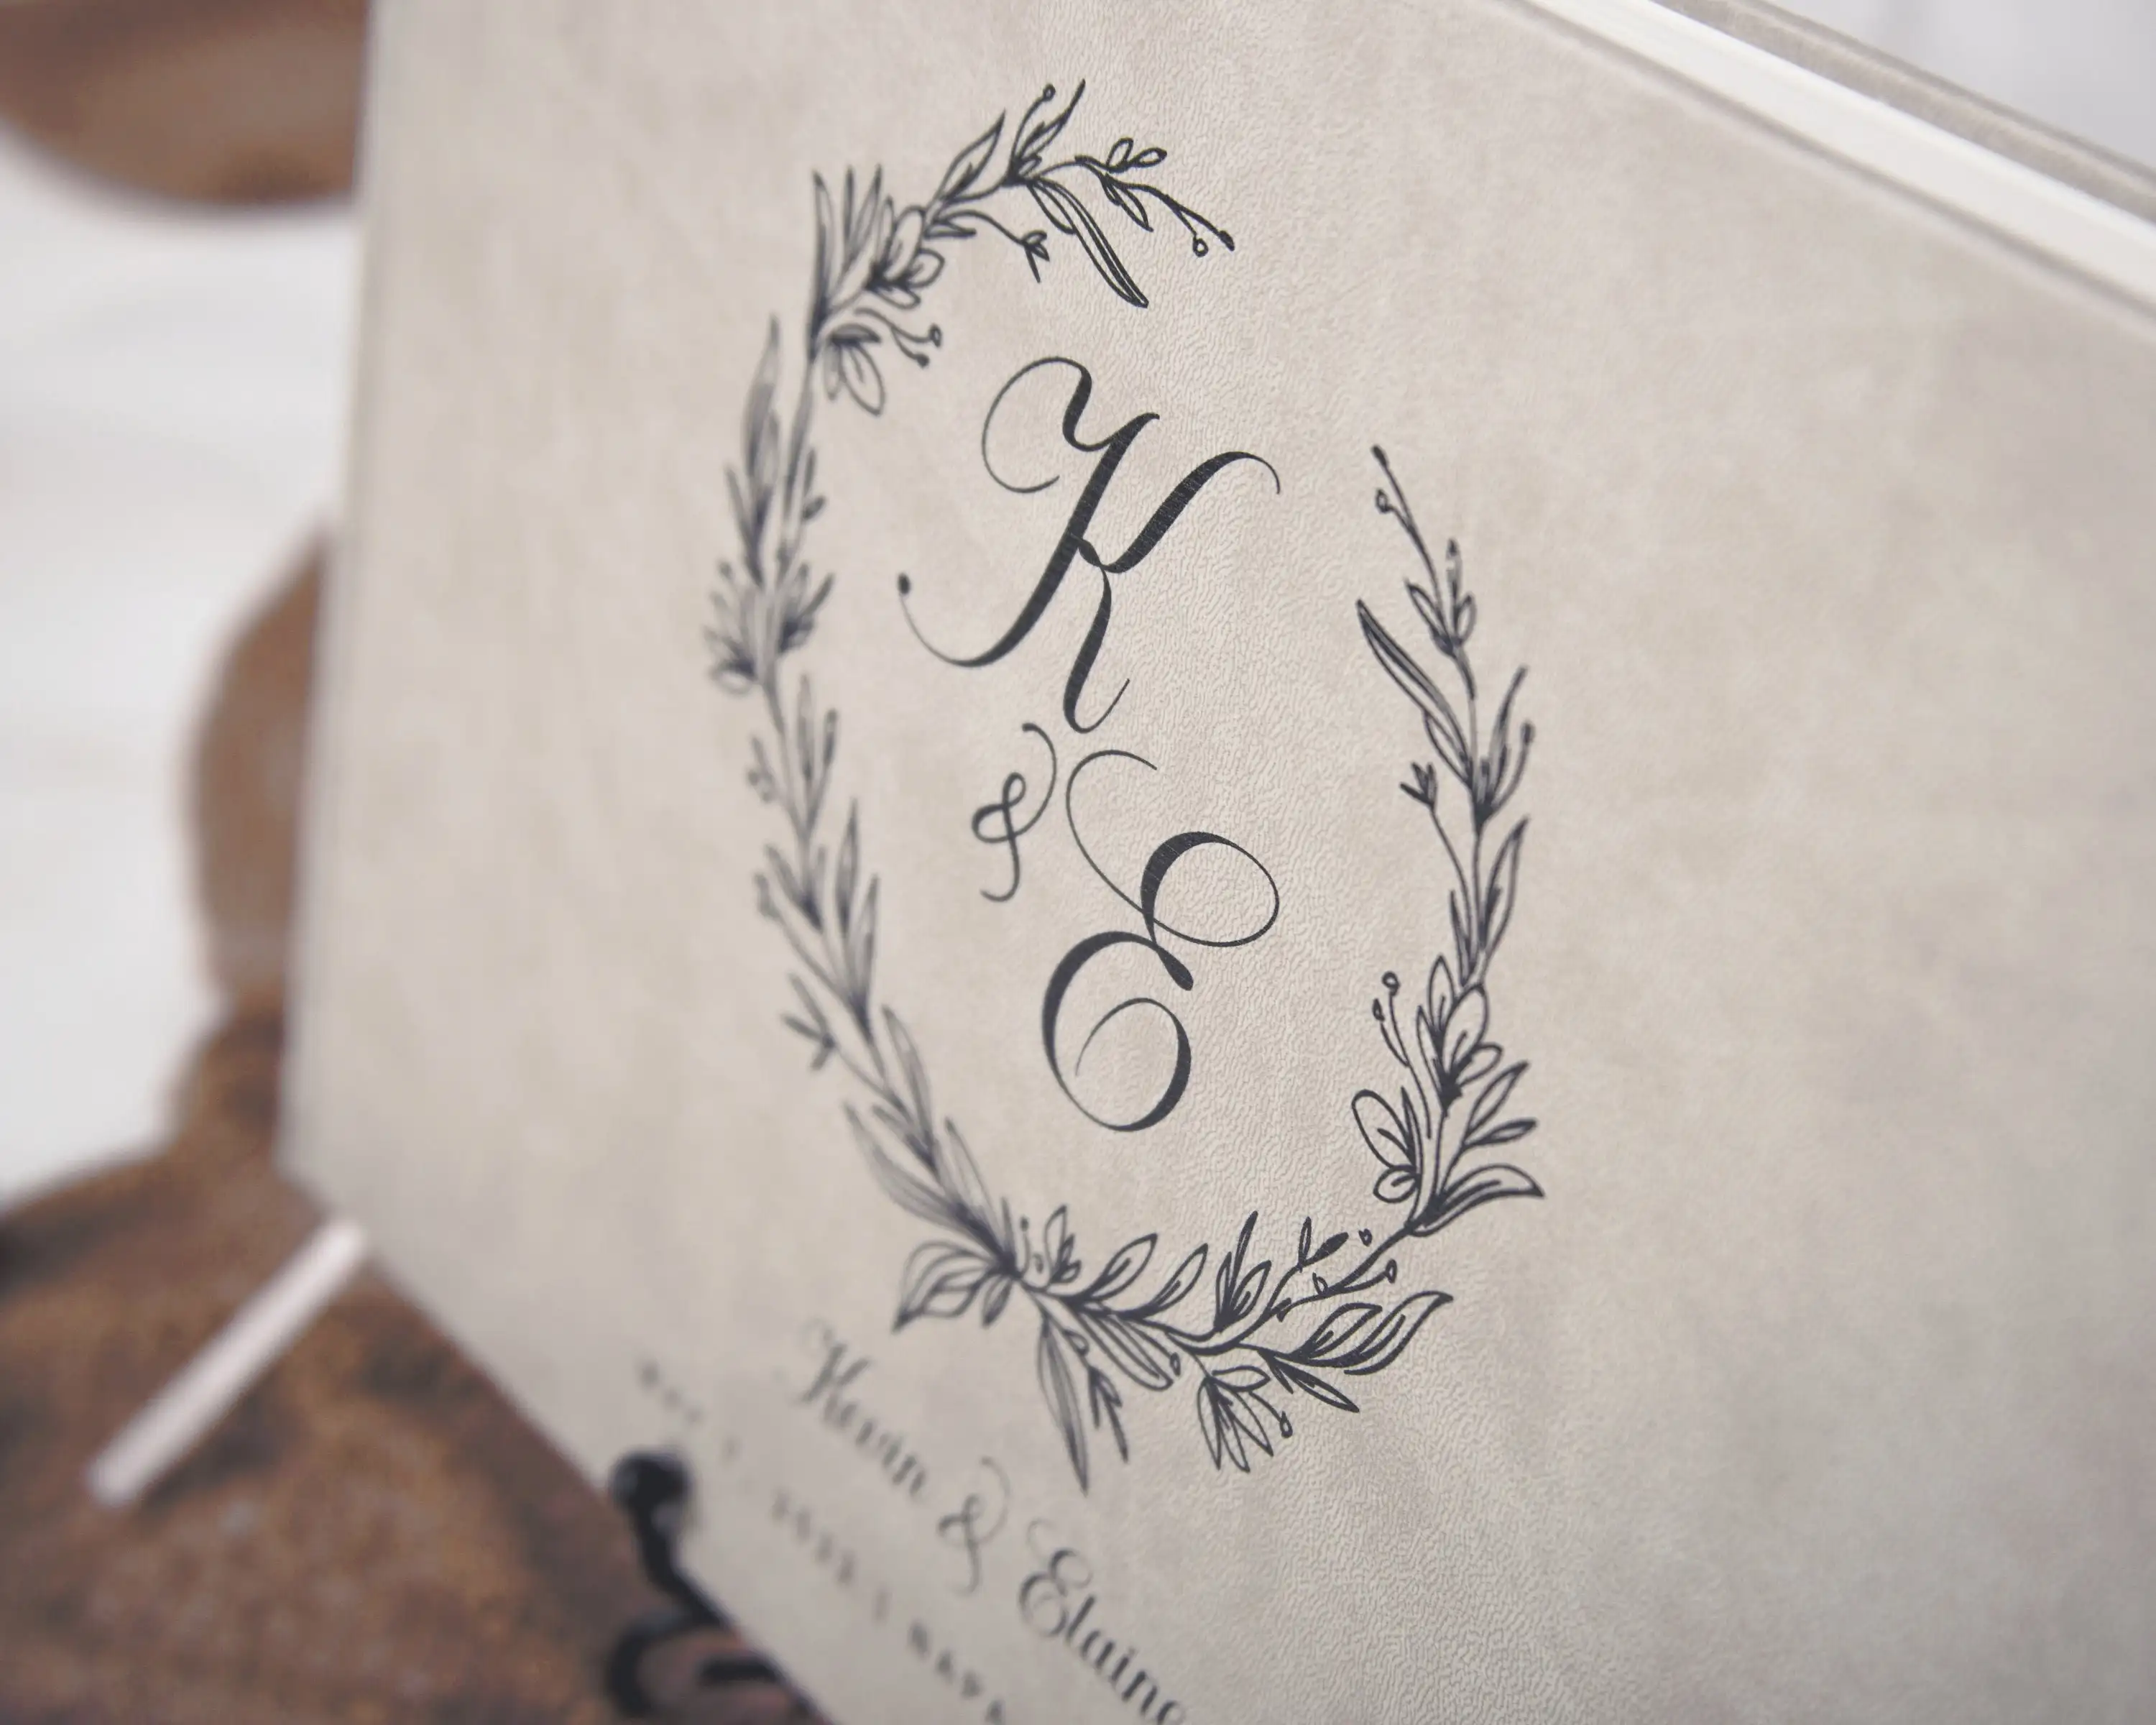 دفتر مخصص للضيوف لحفلات الزفاف كتاب ضيف فريد لحفلات الزفاف المخصصة